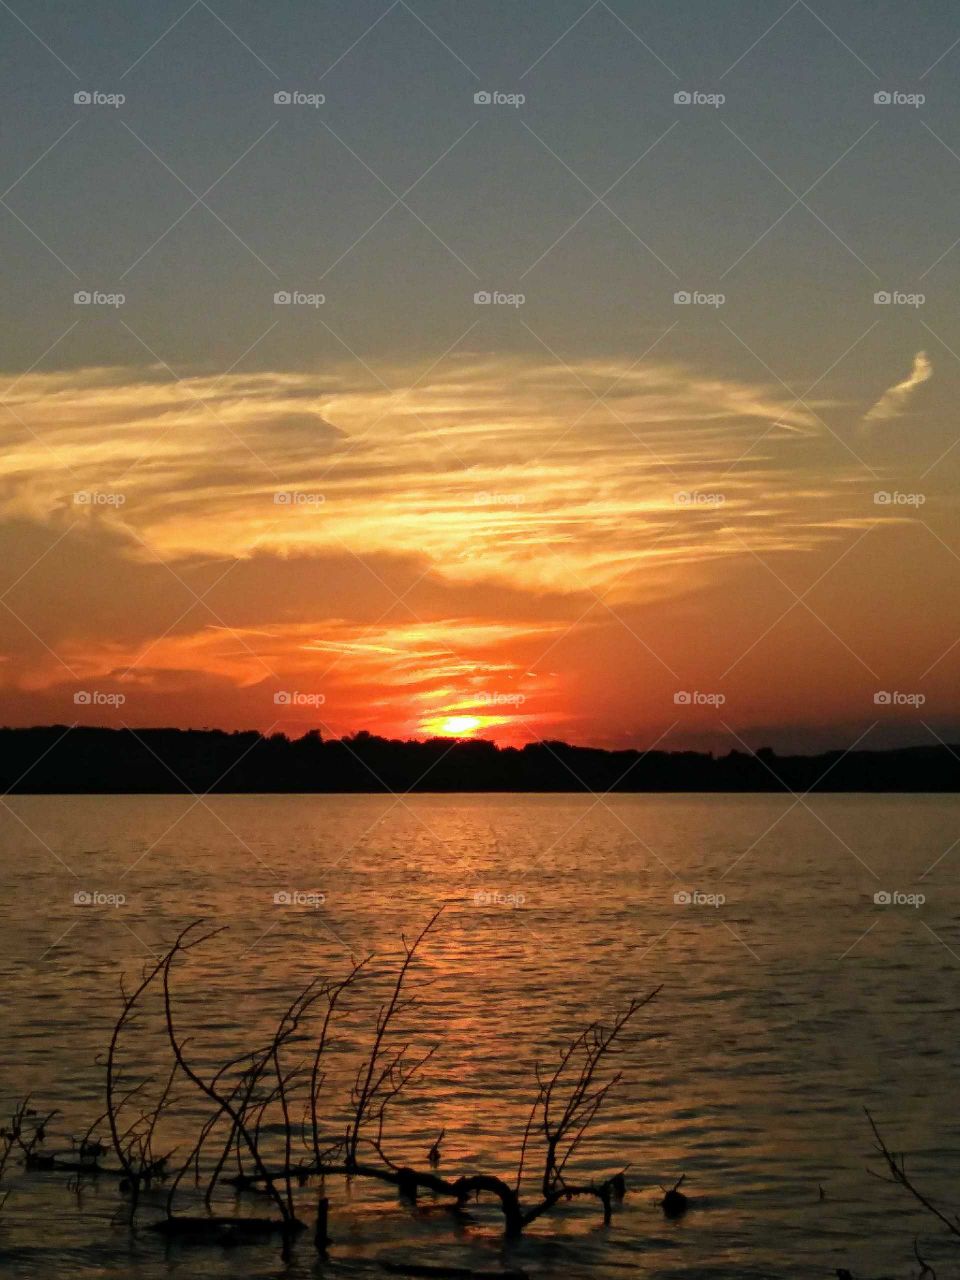 Sunset at Onondaga Lake